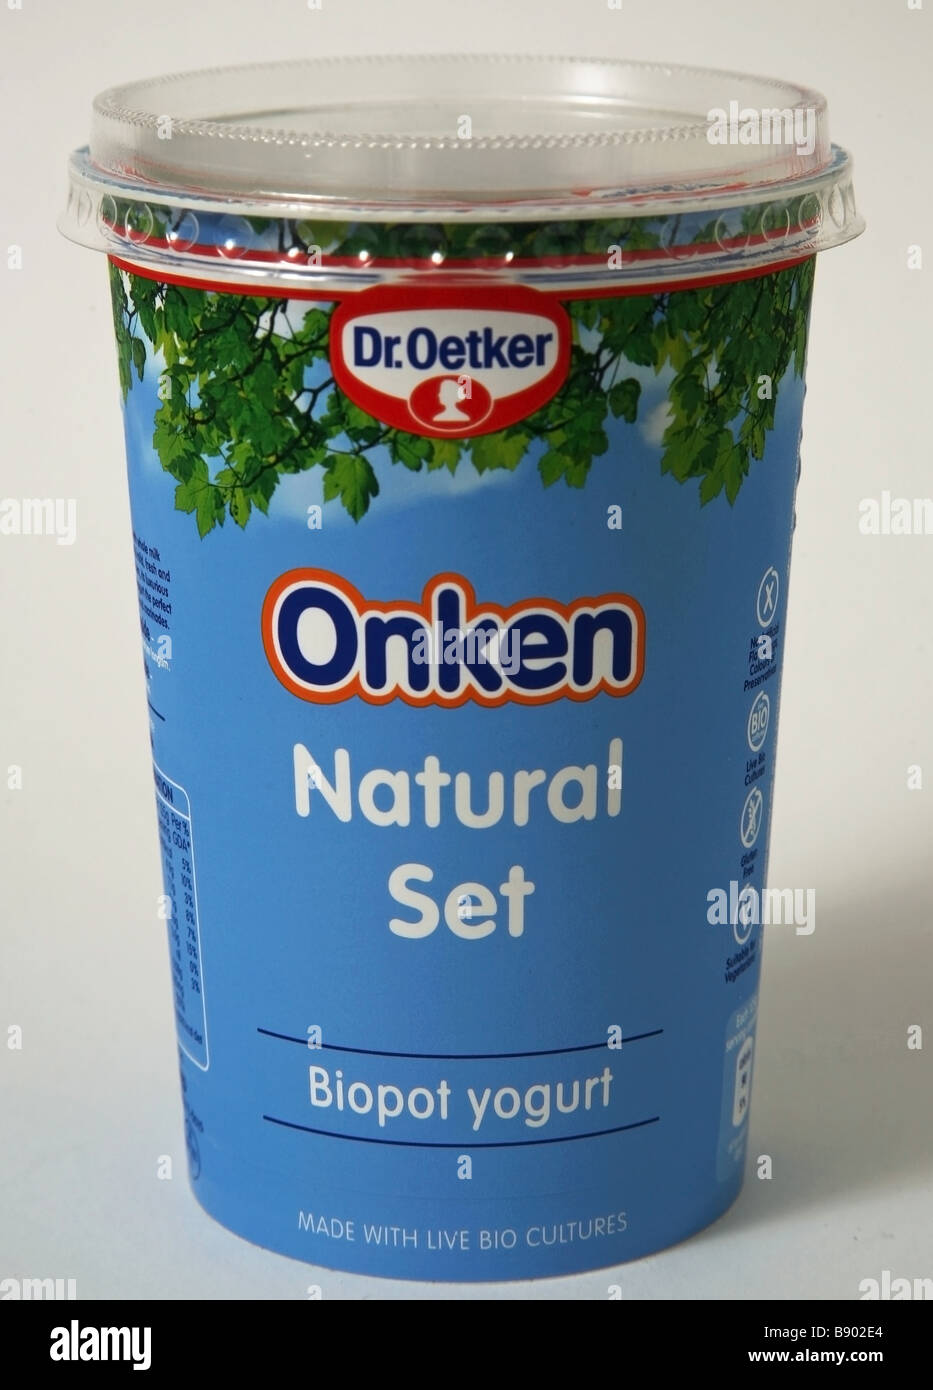 onken natural set yogurt probiotic Stock Photo